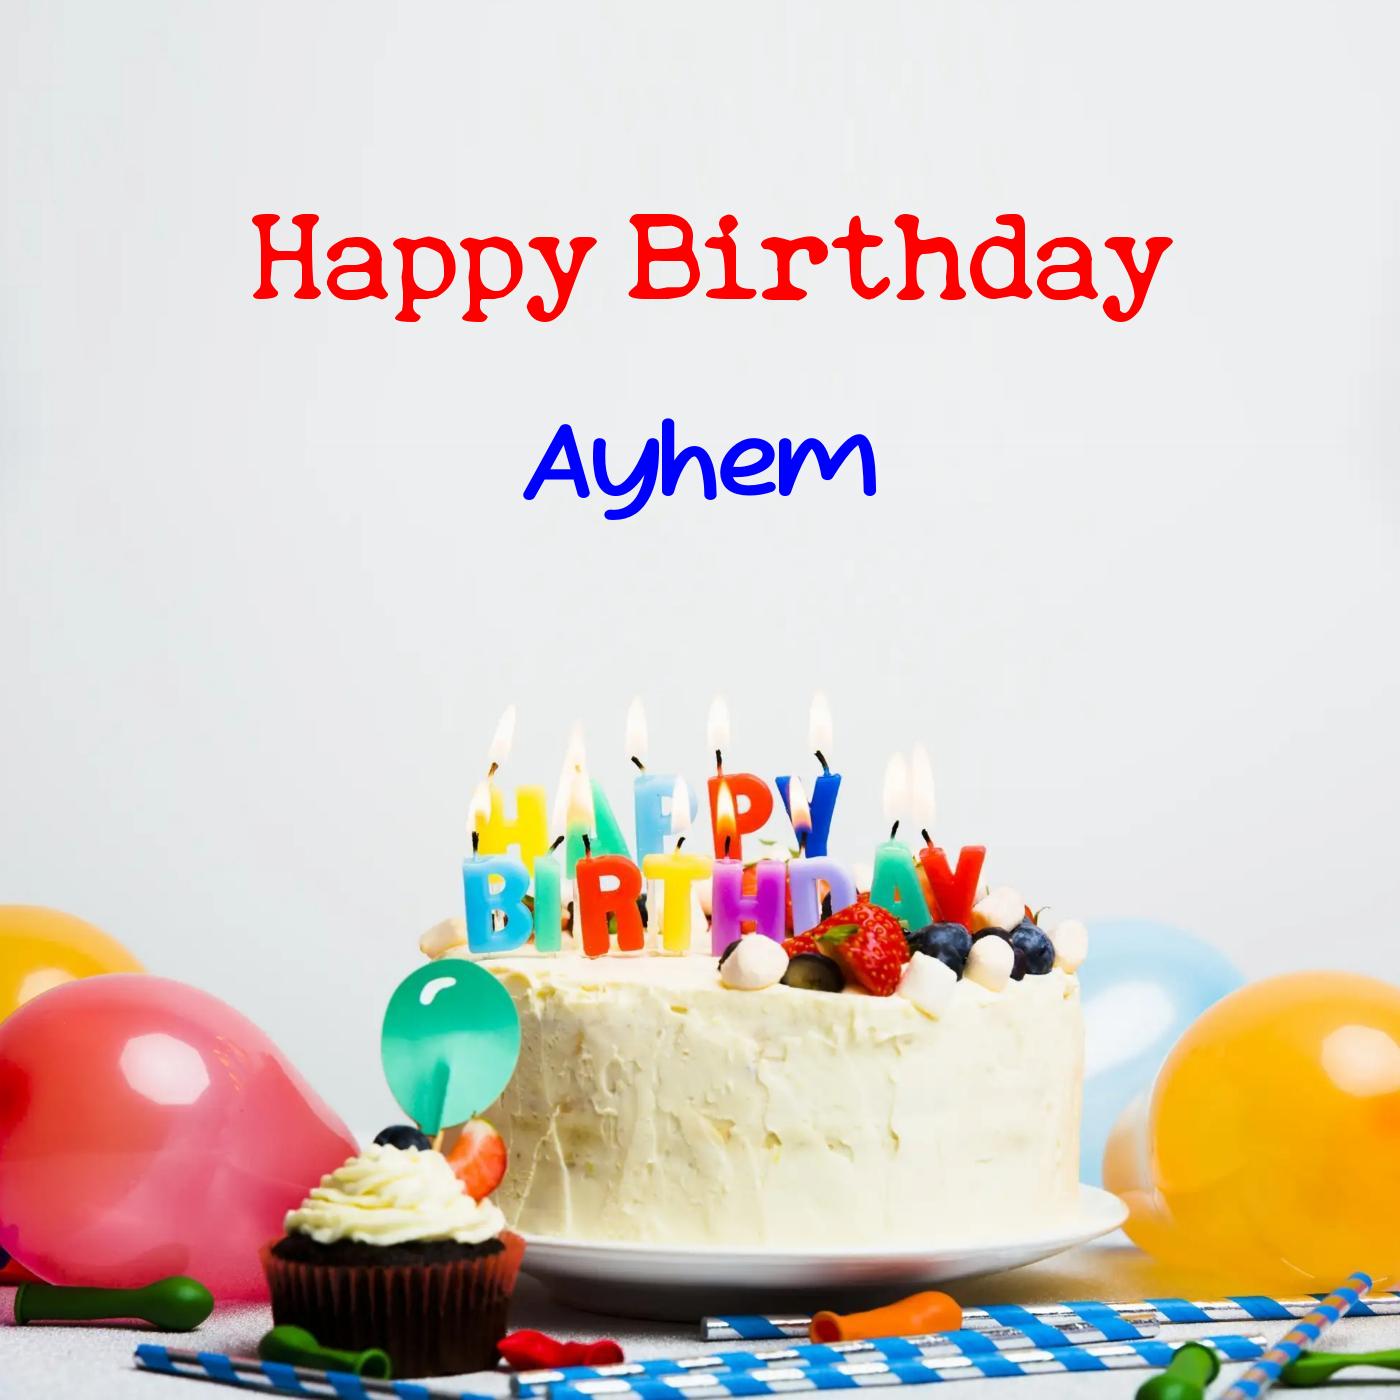 Happy Birthday Ayhem Cake Balloons Card